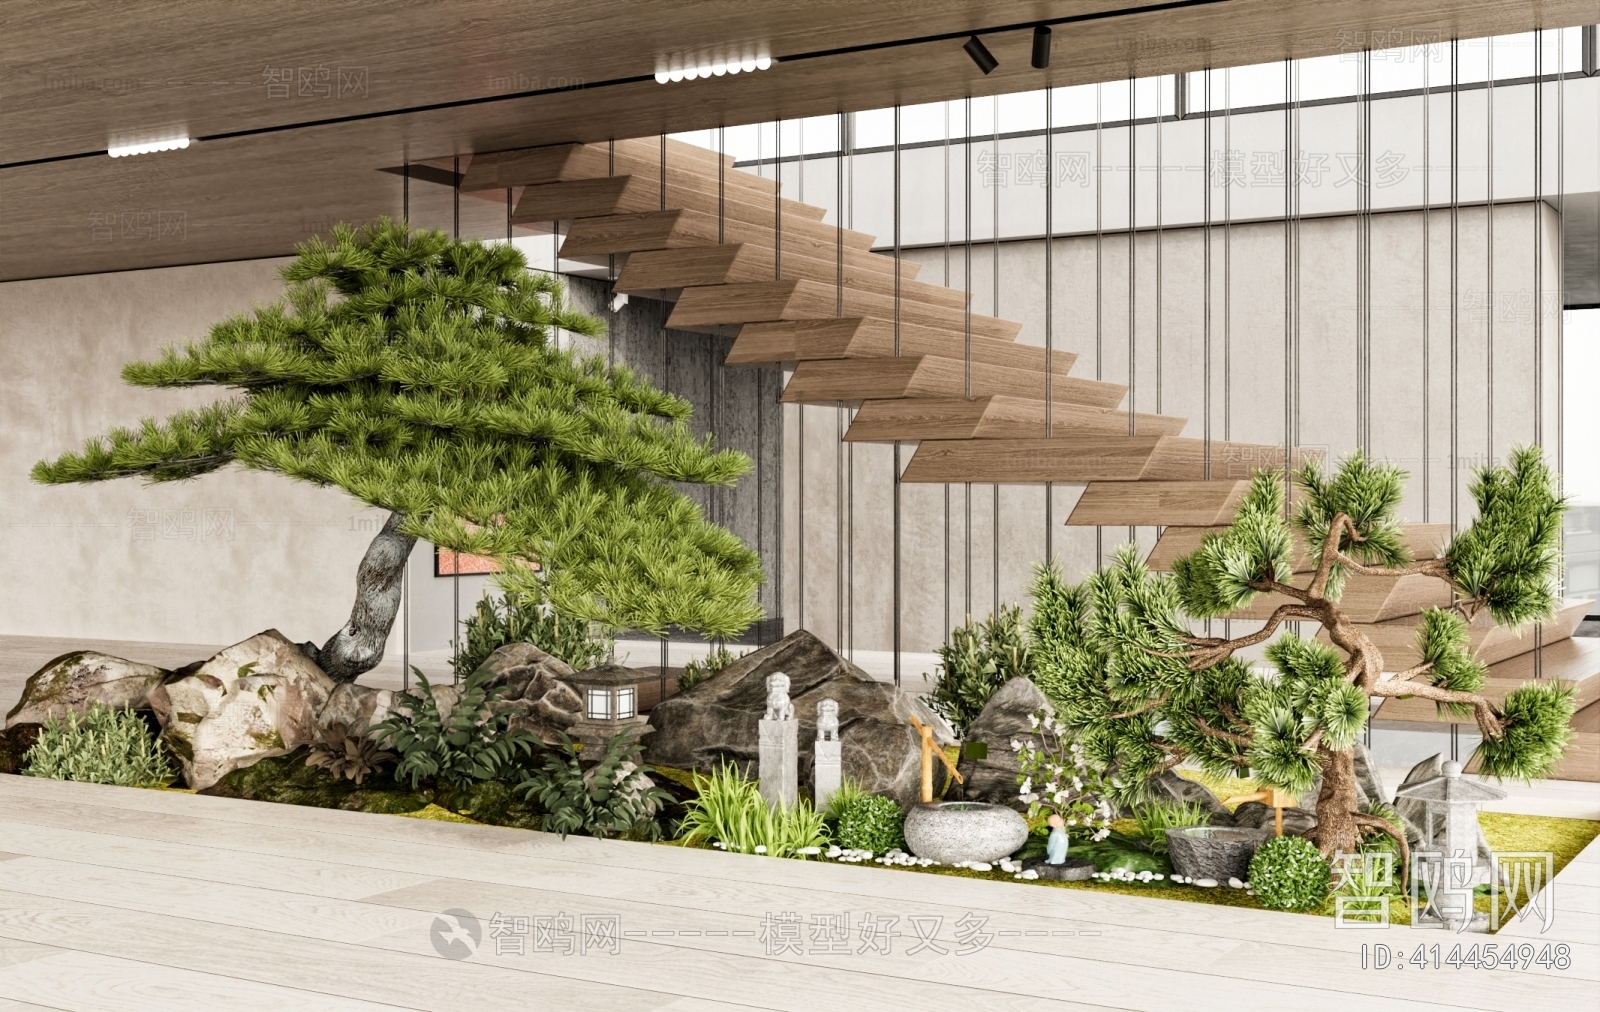 新中式楼梯间景观植物小品